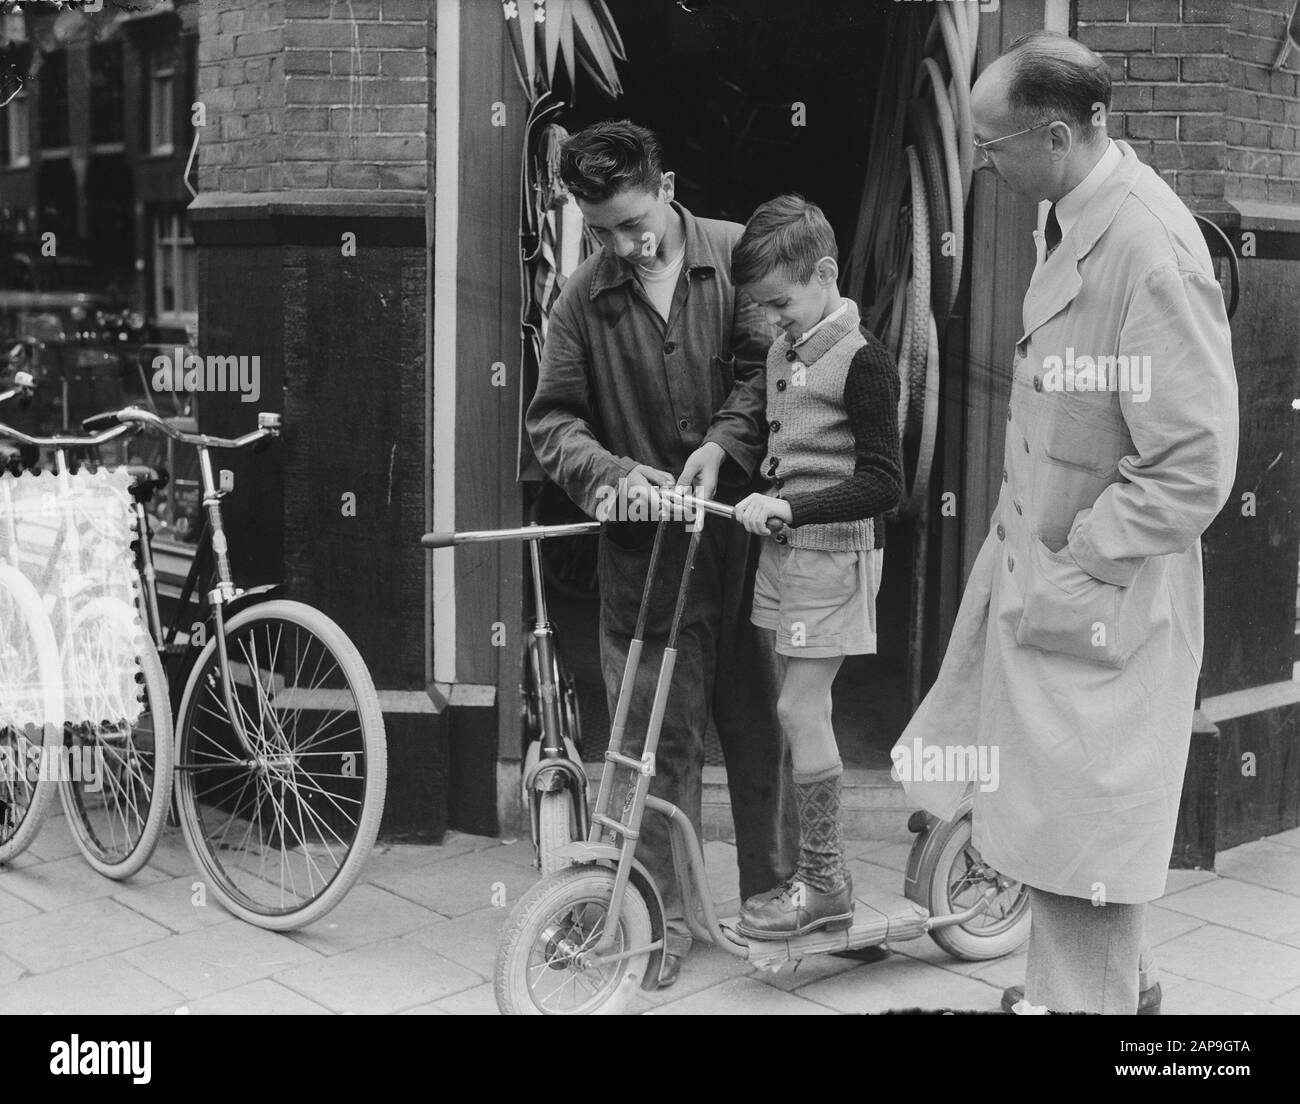 Autoped mit Lenker beweglich Datum: 24. Juli 1951 Ort: Amsterdam Schlagwörter: Autopeds Stockfoto